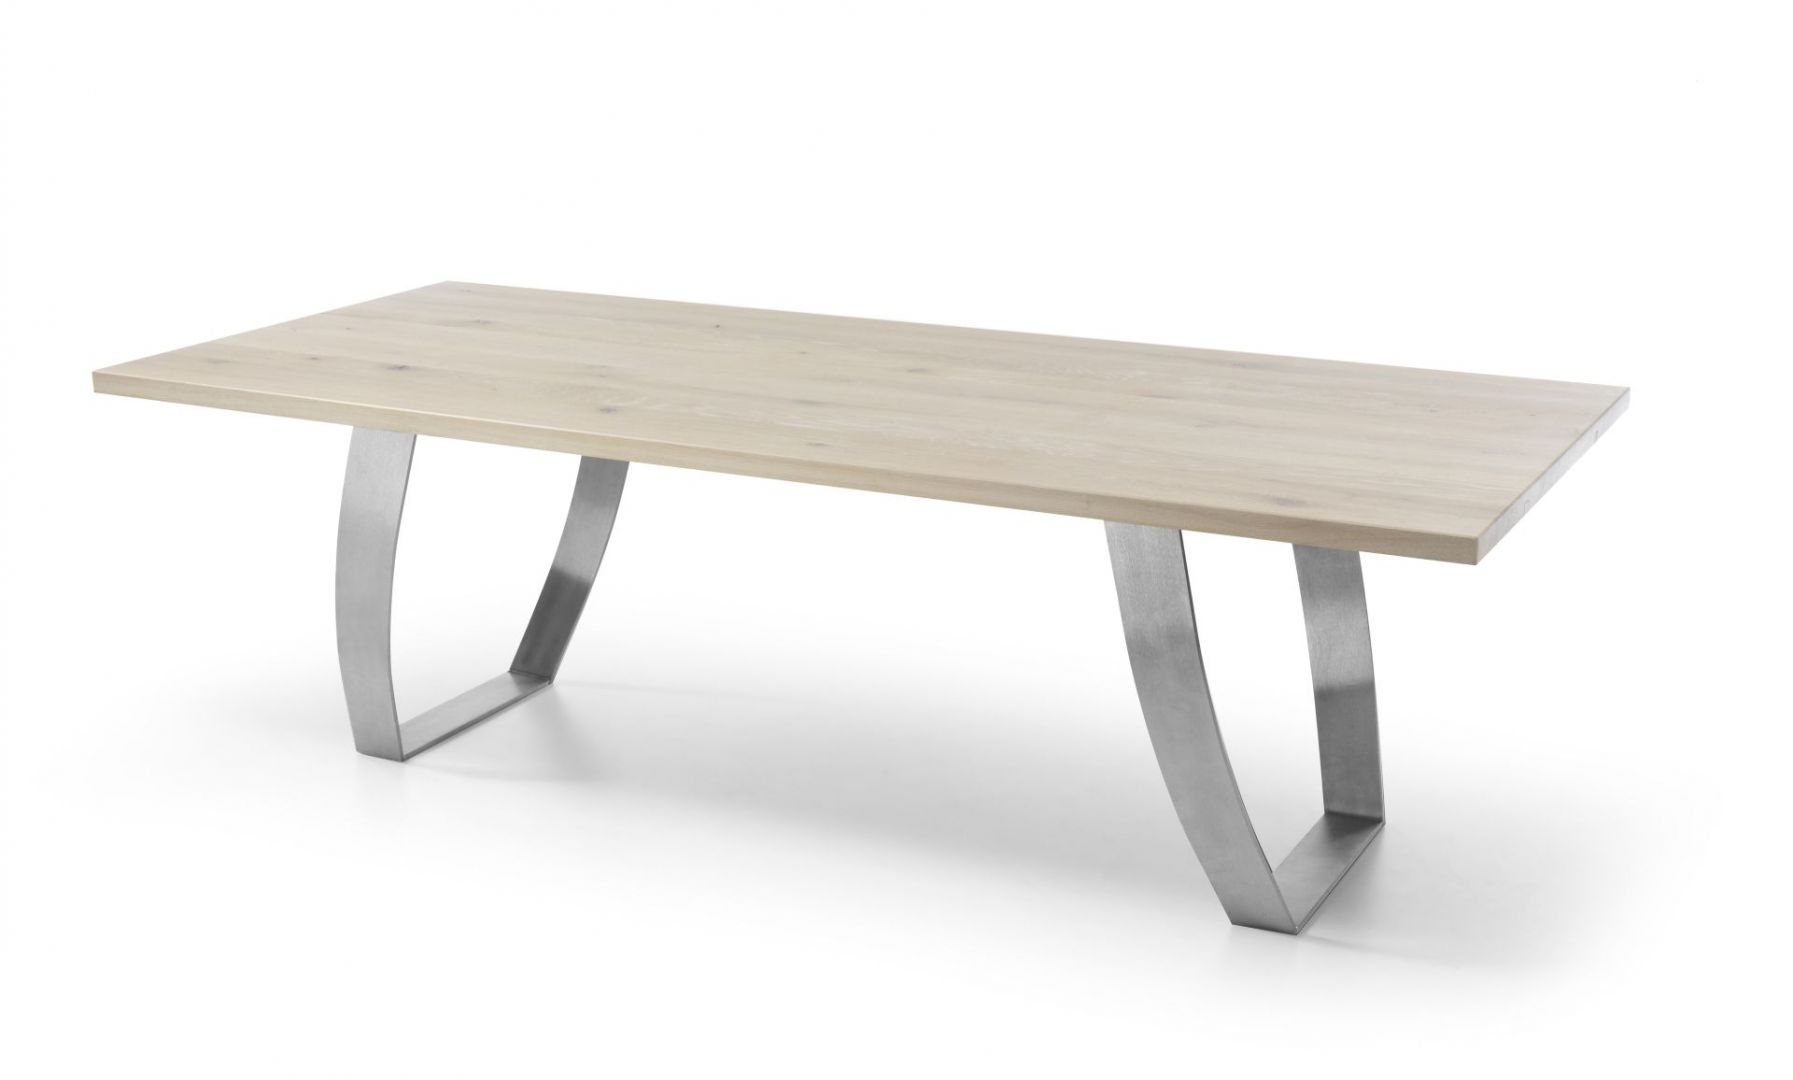 Altro to prostokątny stół, wykonany z drzewa dębowego, o delikatnym ubarwieniu. Jest on uosobieniem nowoczesnego włoskiego designu z domieszką delikatności, wynikającej z prostoty projektu. Fot. Congrazio